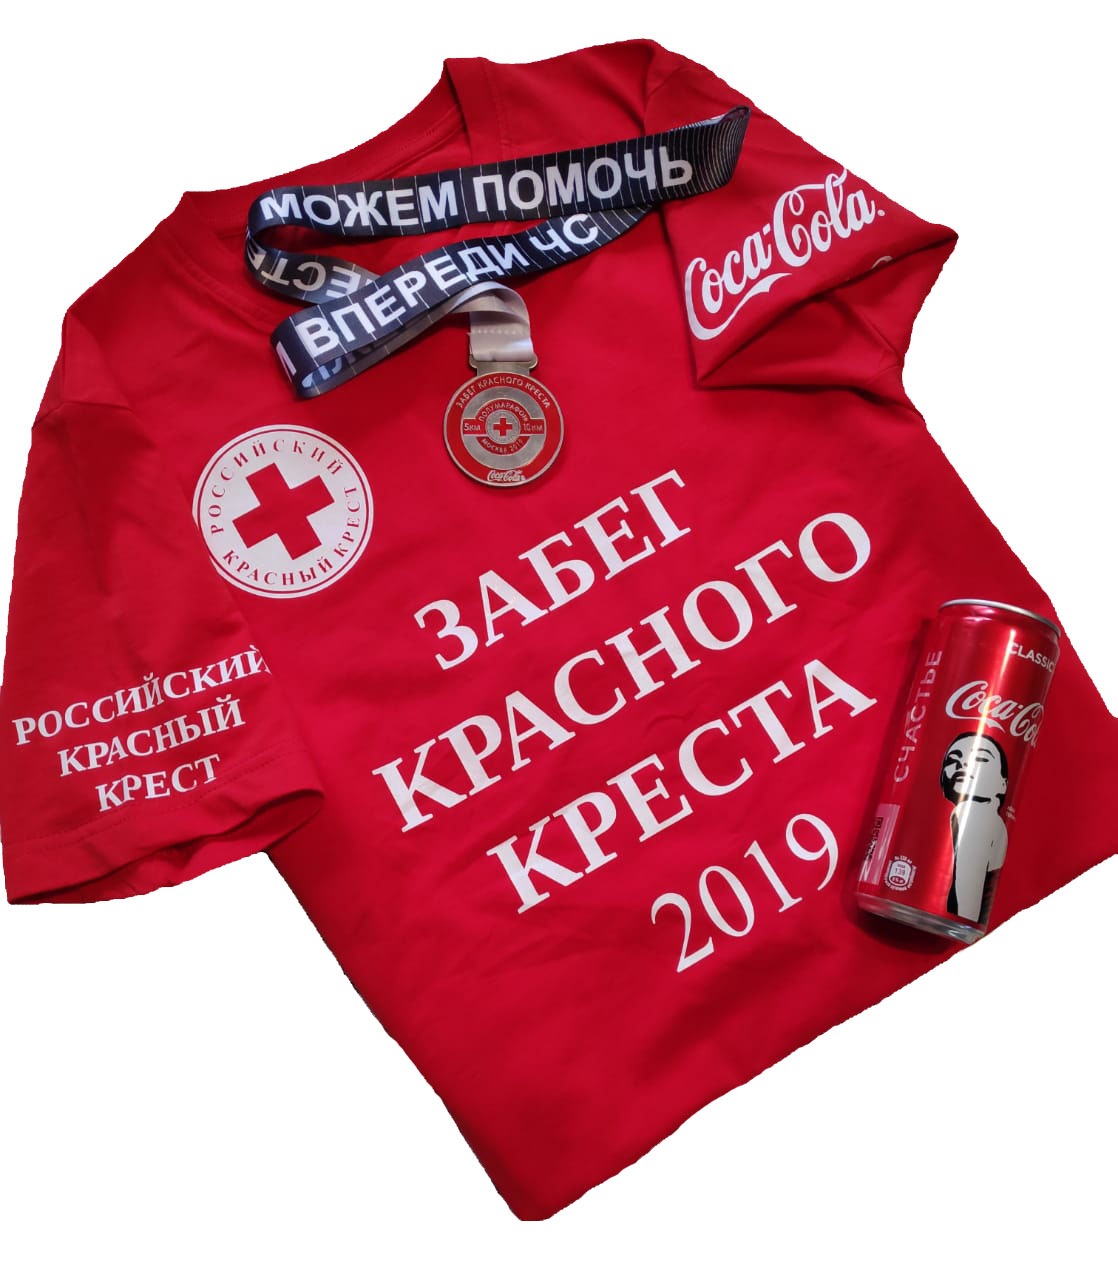 Включи красный друг. Футболка российский красный крест. Забег красный крест. Благотворительный фонд красный крест. Футболки для благотворительных забегов.